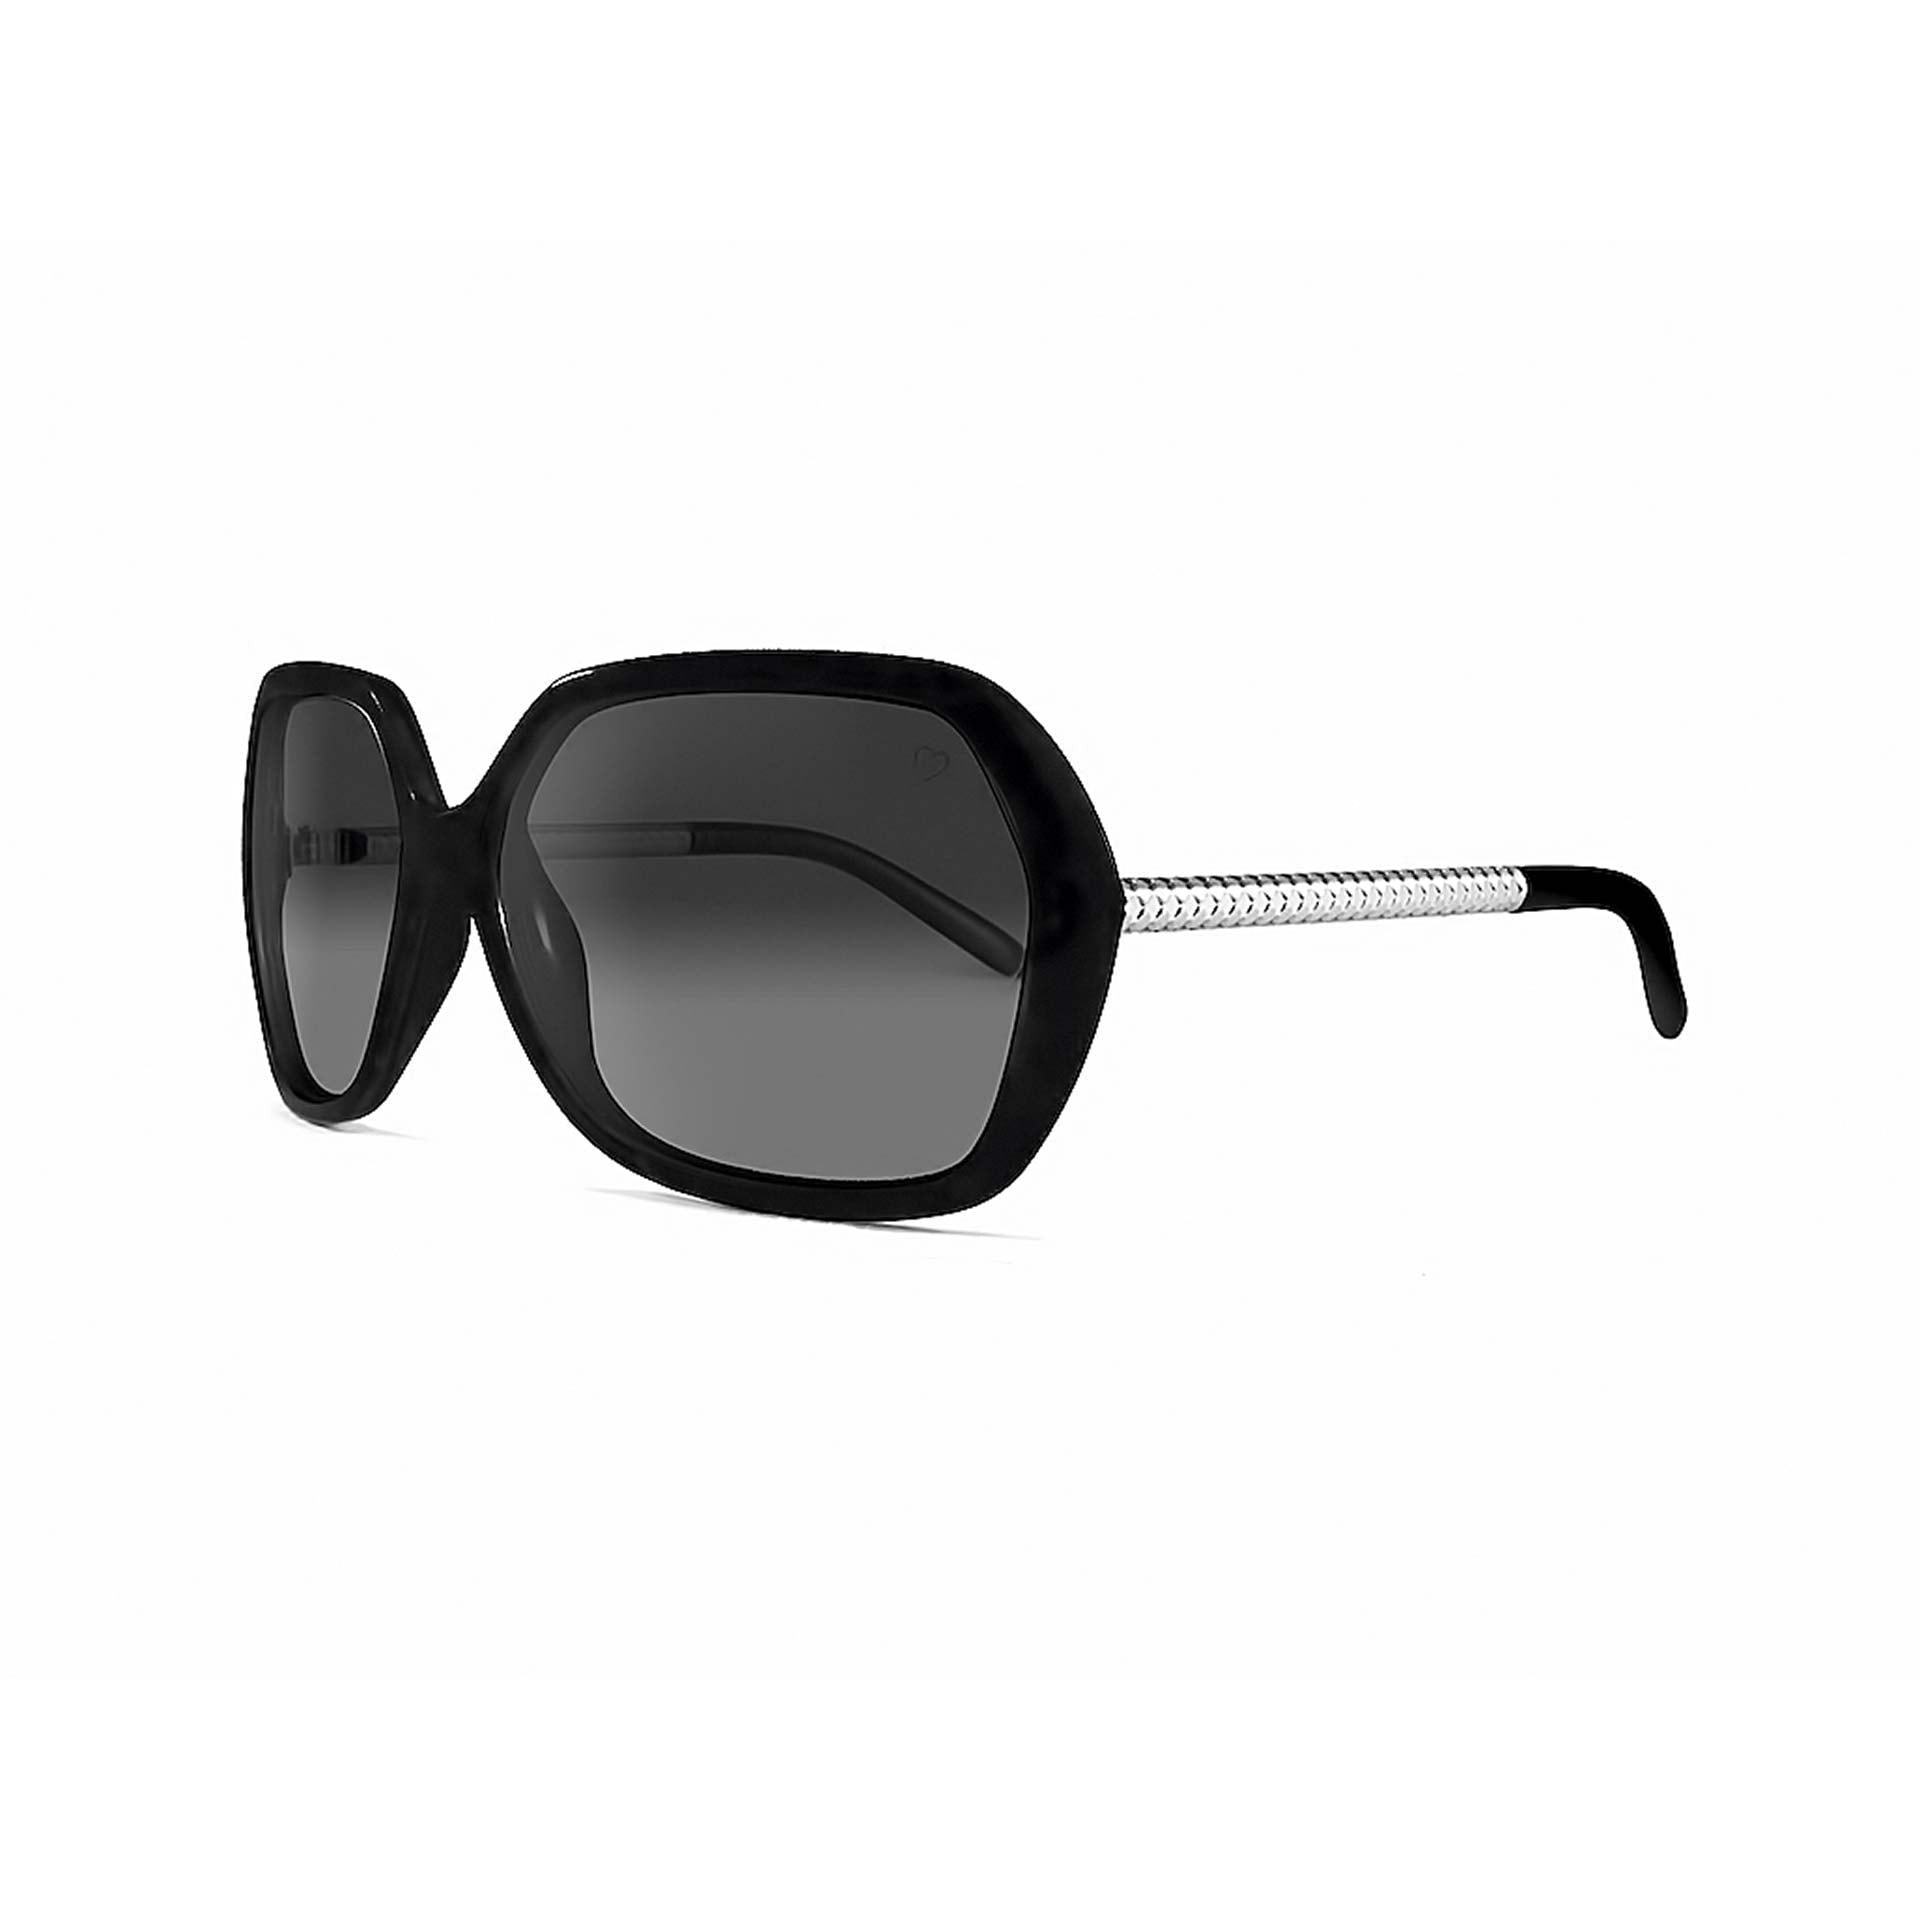 Ladies 'Paris' Oversized Sunglasses In Black